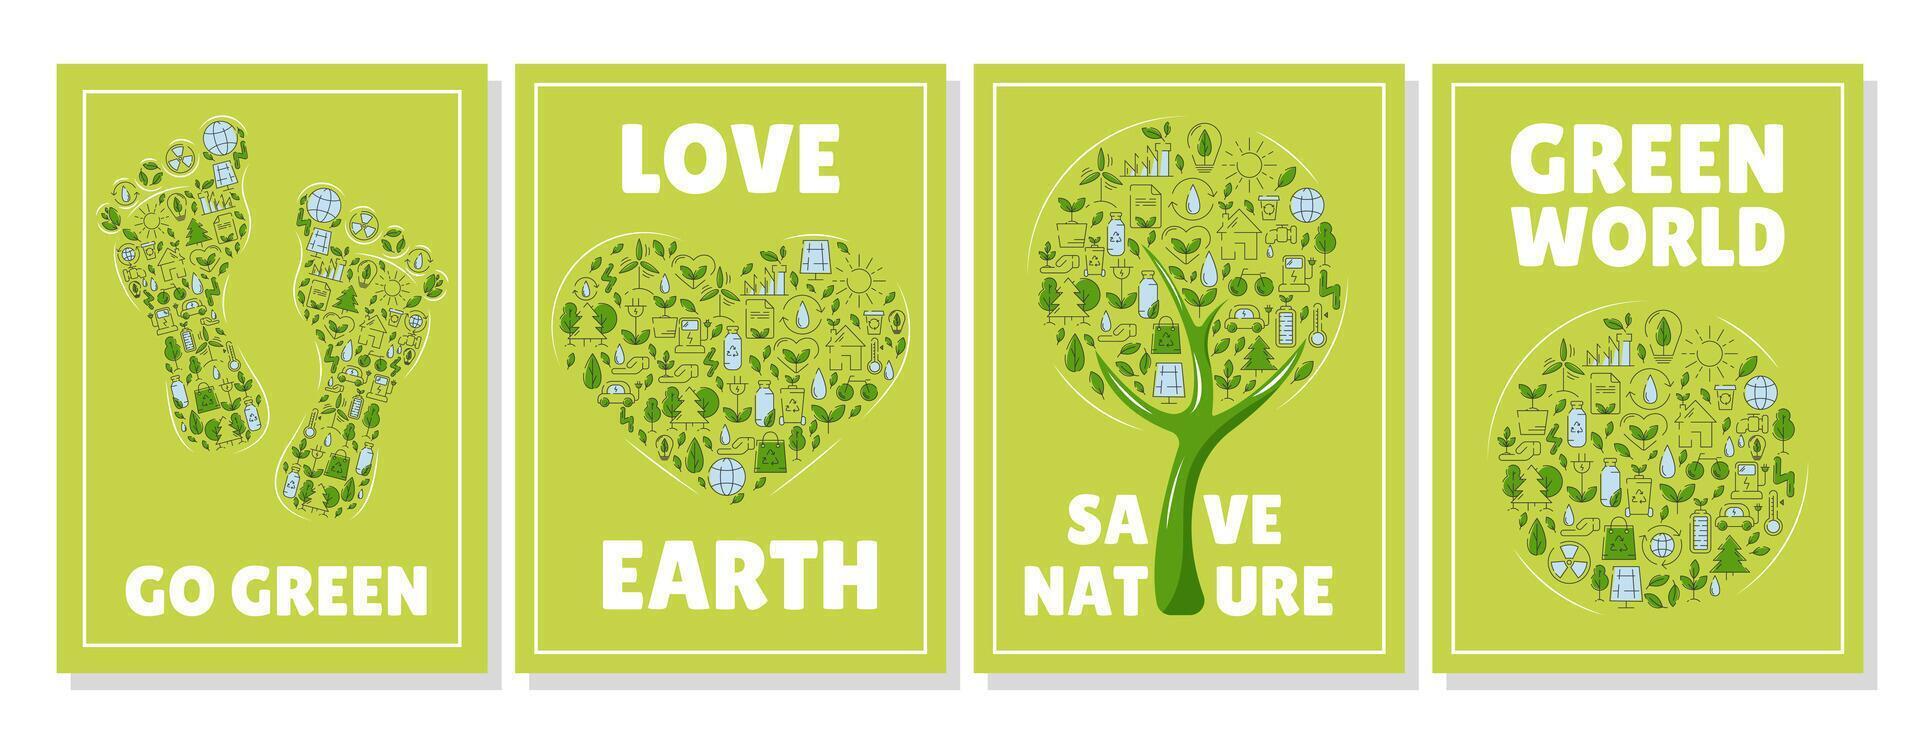 uppsättning av ekologi affischer, grön eco vänlig träd, hjärta, fotavtryck, runda fylld med ekologisk vektor ikoner. ekologi begrepp, återvinning hållbarhet, förnybar energi, netto noll utsläpp förbi 2050